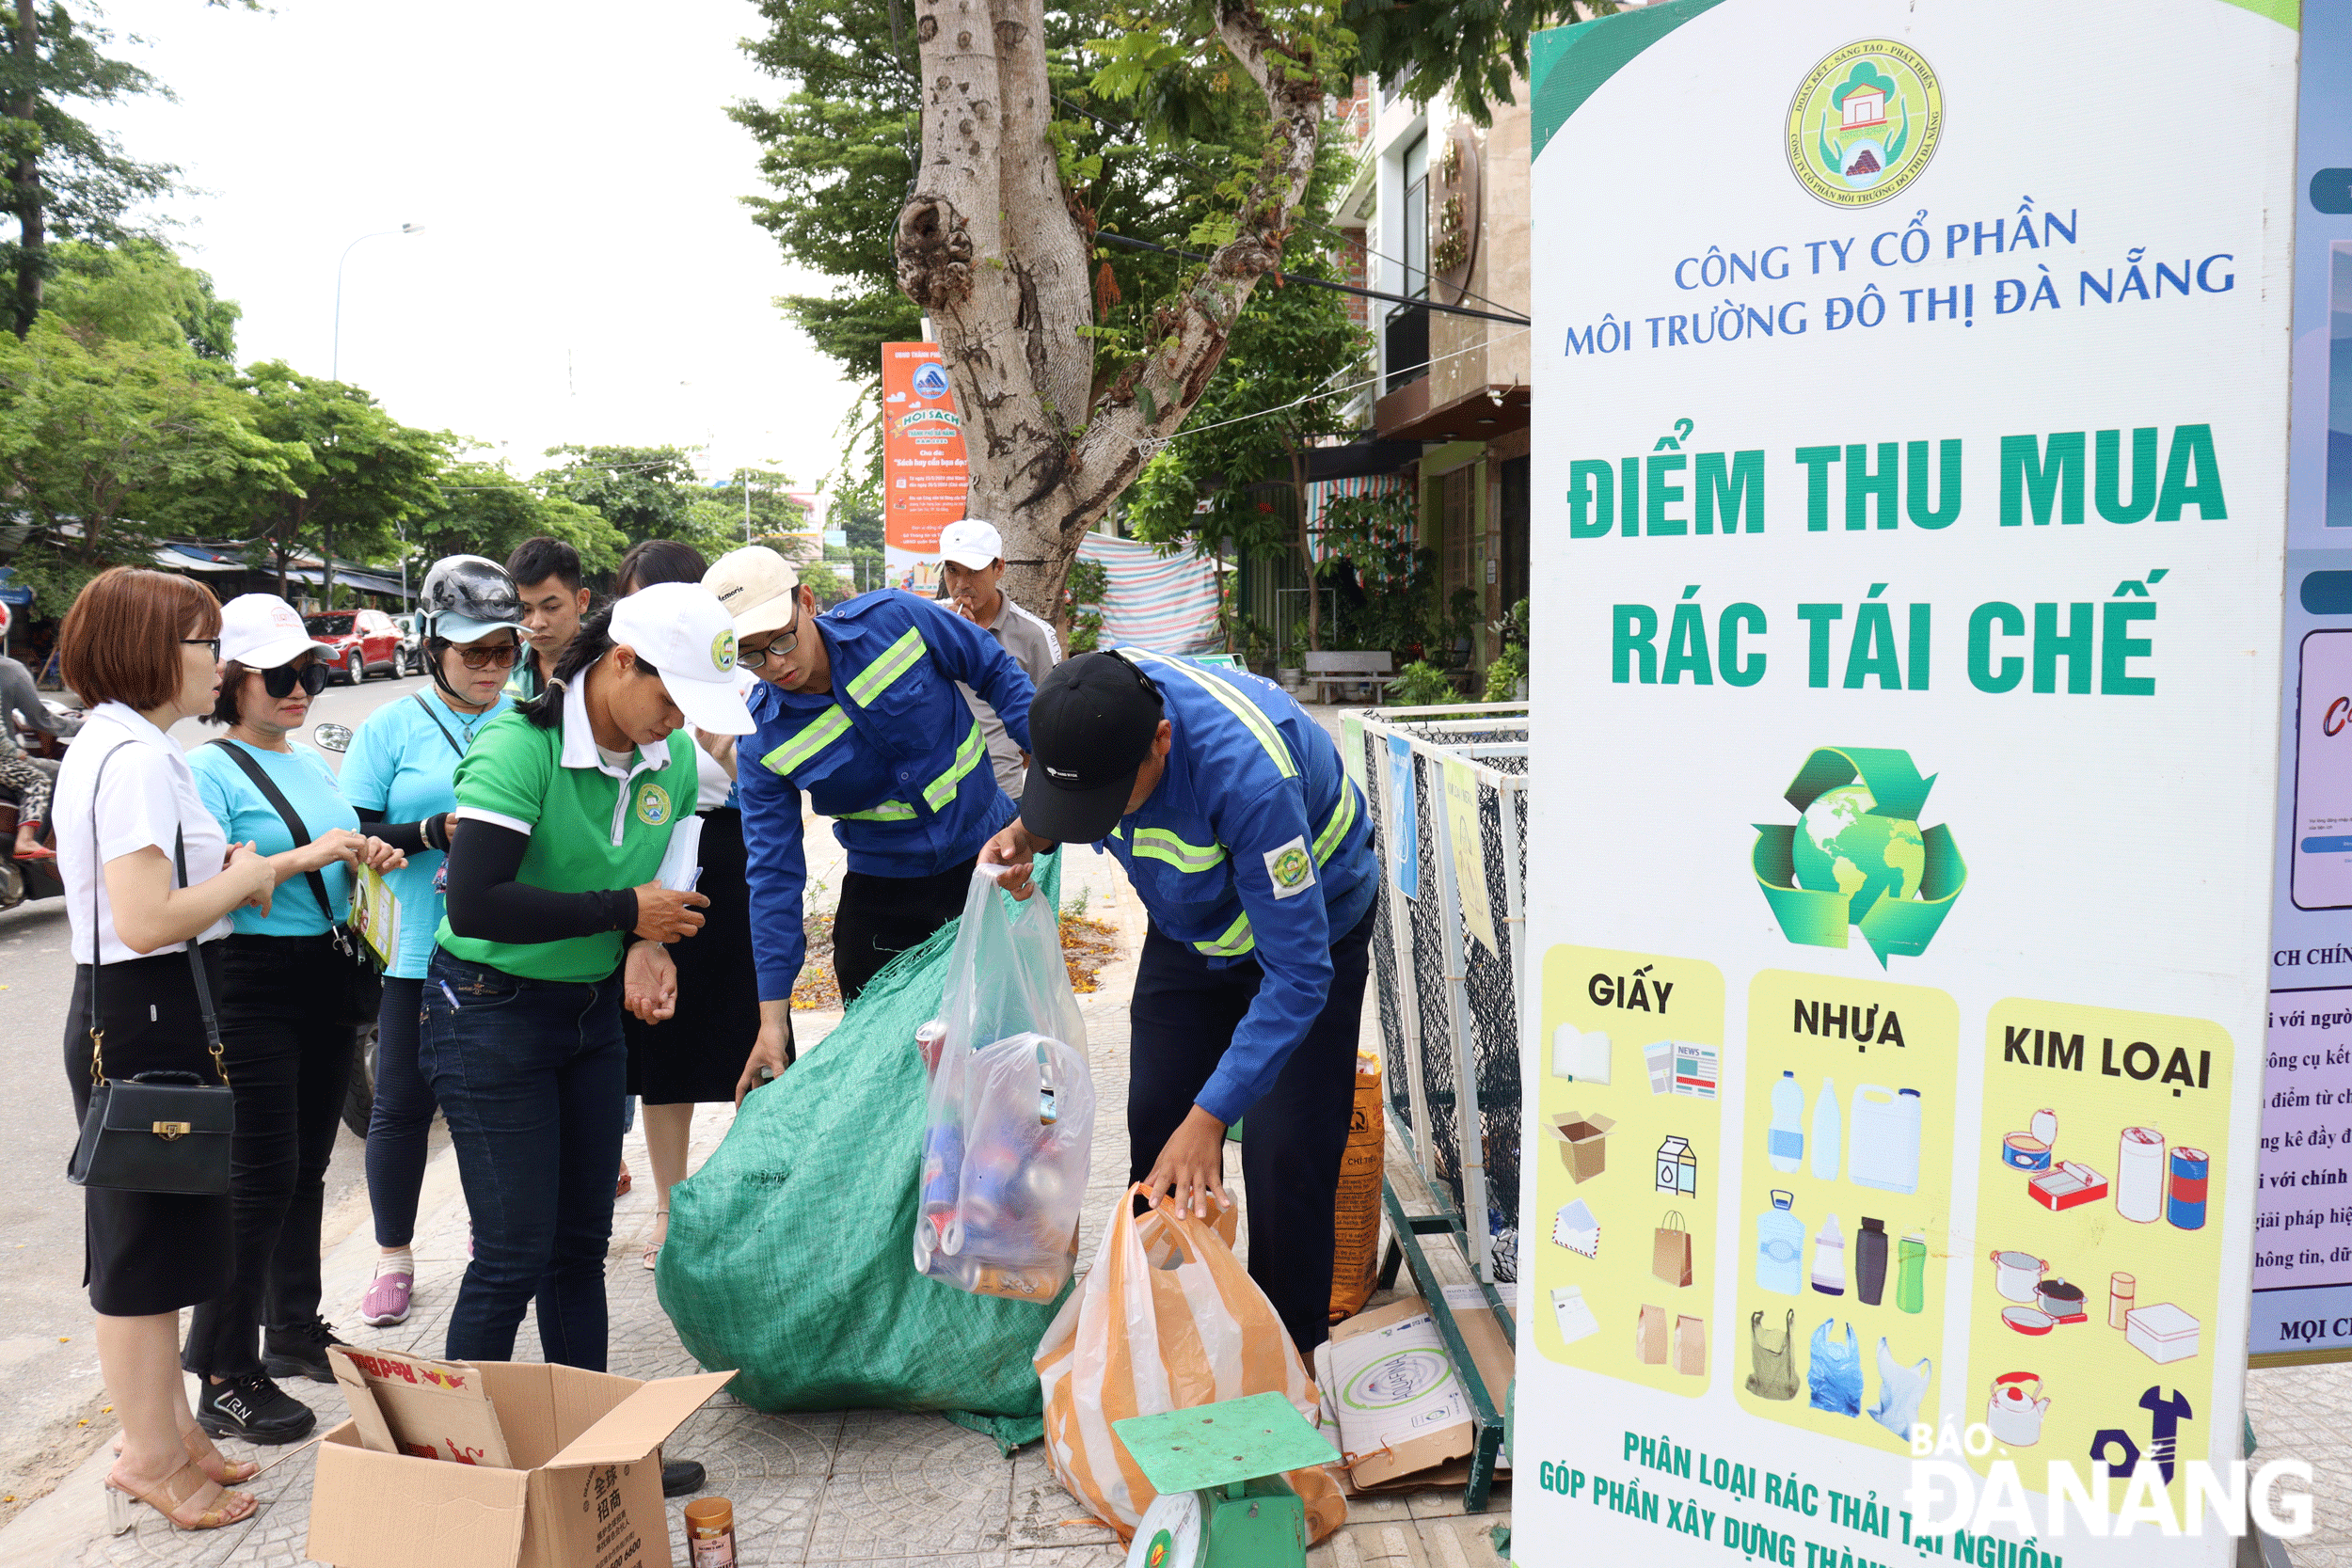 Công ty CP Môi trường đô thị Đà Nẵng tổ chức điểm thu mua rác tái chế tại quận Sơn Trà.  Ảnh: PHƯƠNG VŨ